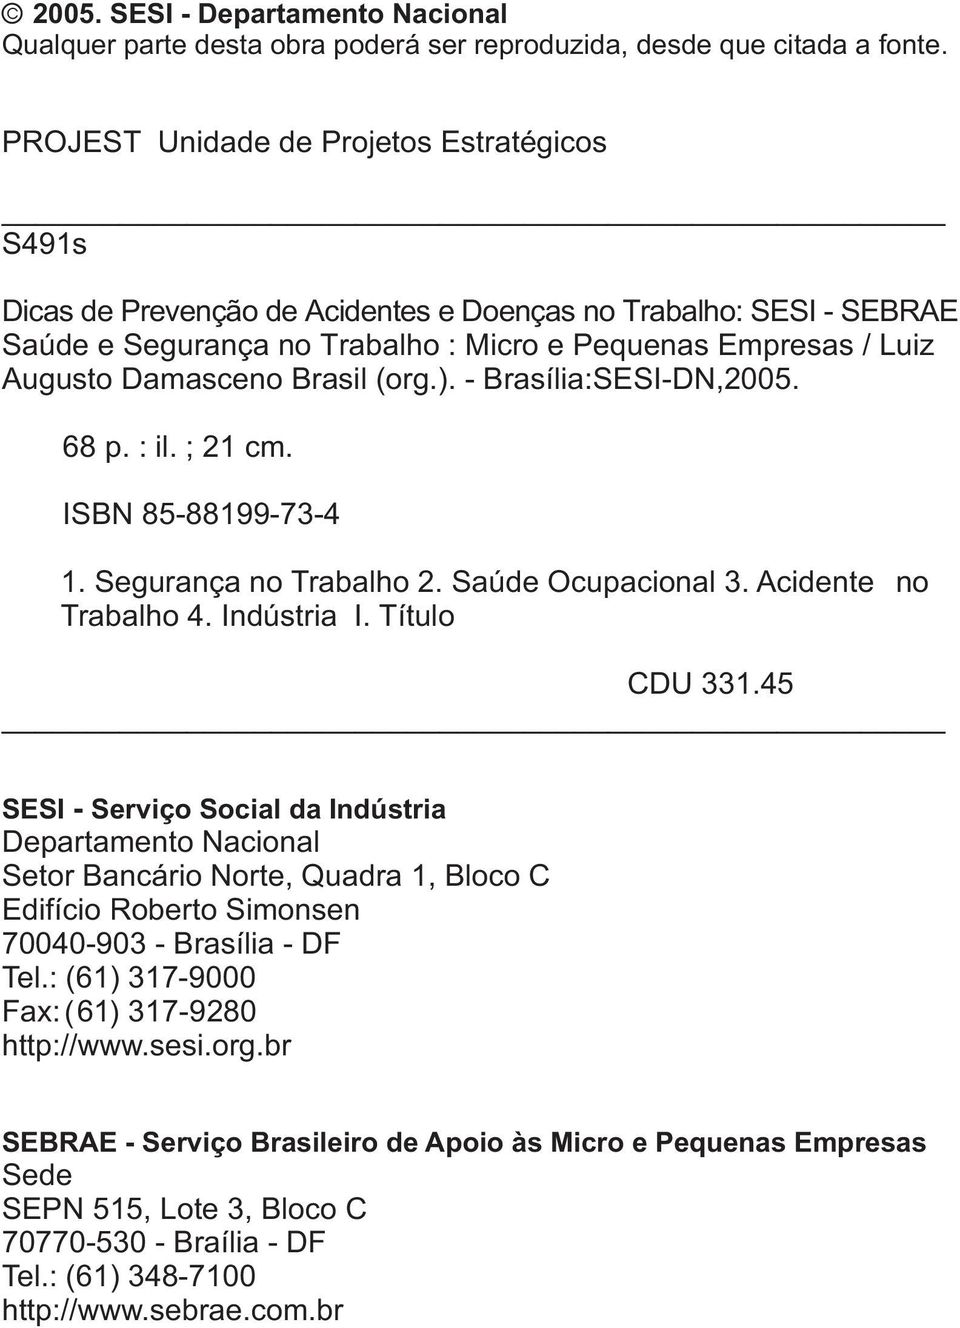 Brasil (org.). - Brasília:SESI-DN,2005. 68 p. : il. ; 21 cm. ISBN 85-88199-73-4 1. Segurança no Trabalho 2. Saúde Ocupacional 3. Acidente no Trabalho 4. Indústria I. Título CDU 331.